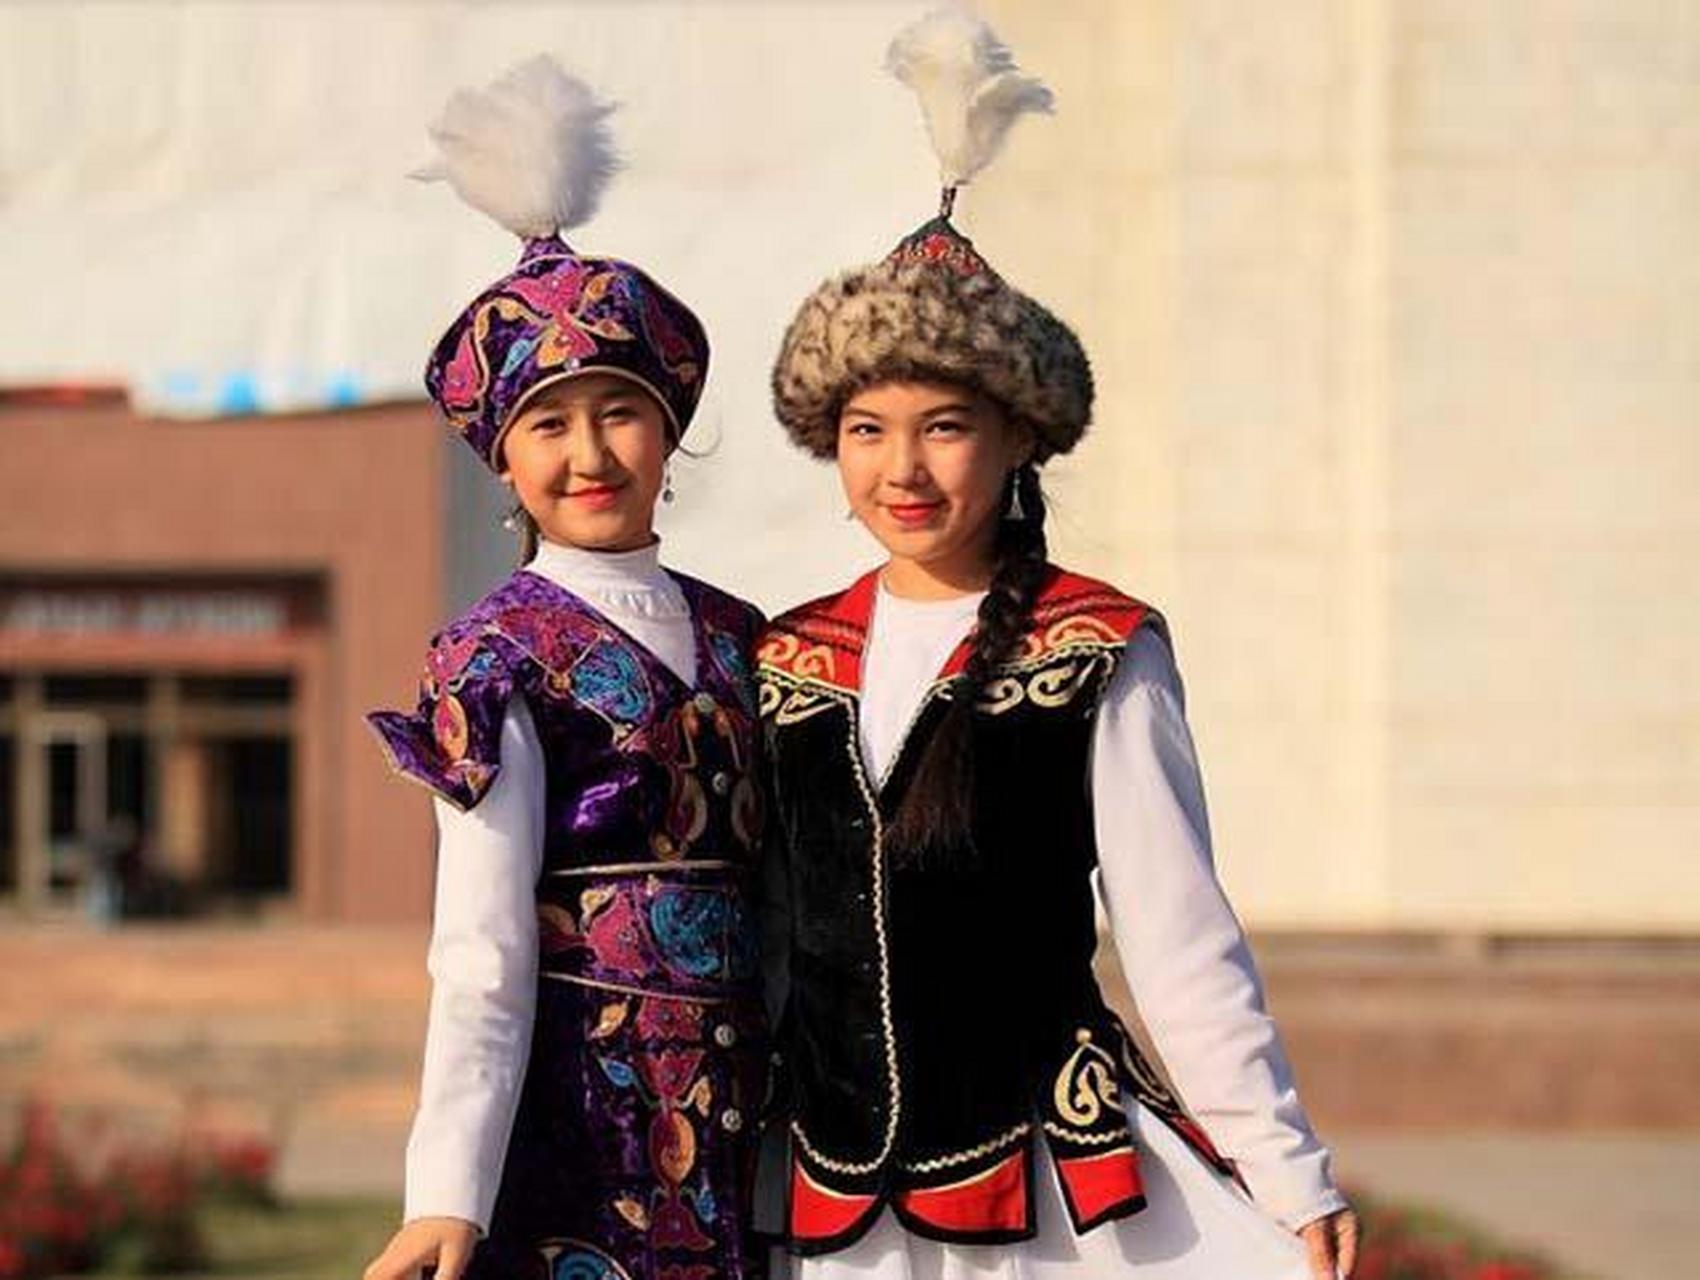 塔吉克斯坦主动归还我国1158平方公里领土,此举彰显其诚意和友好邦交